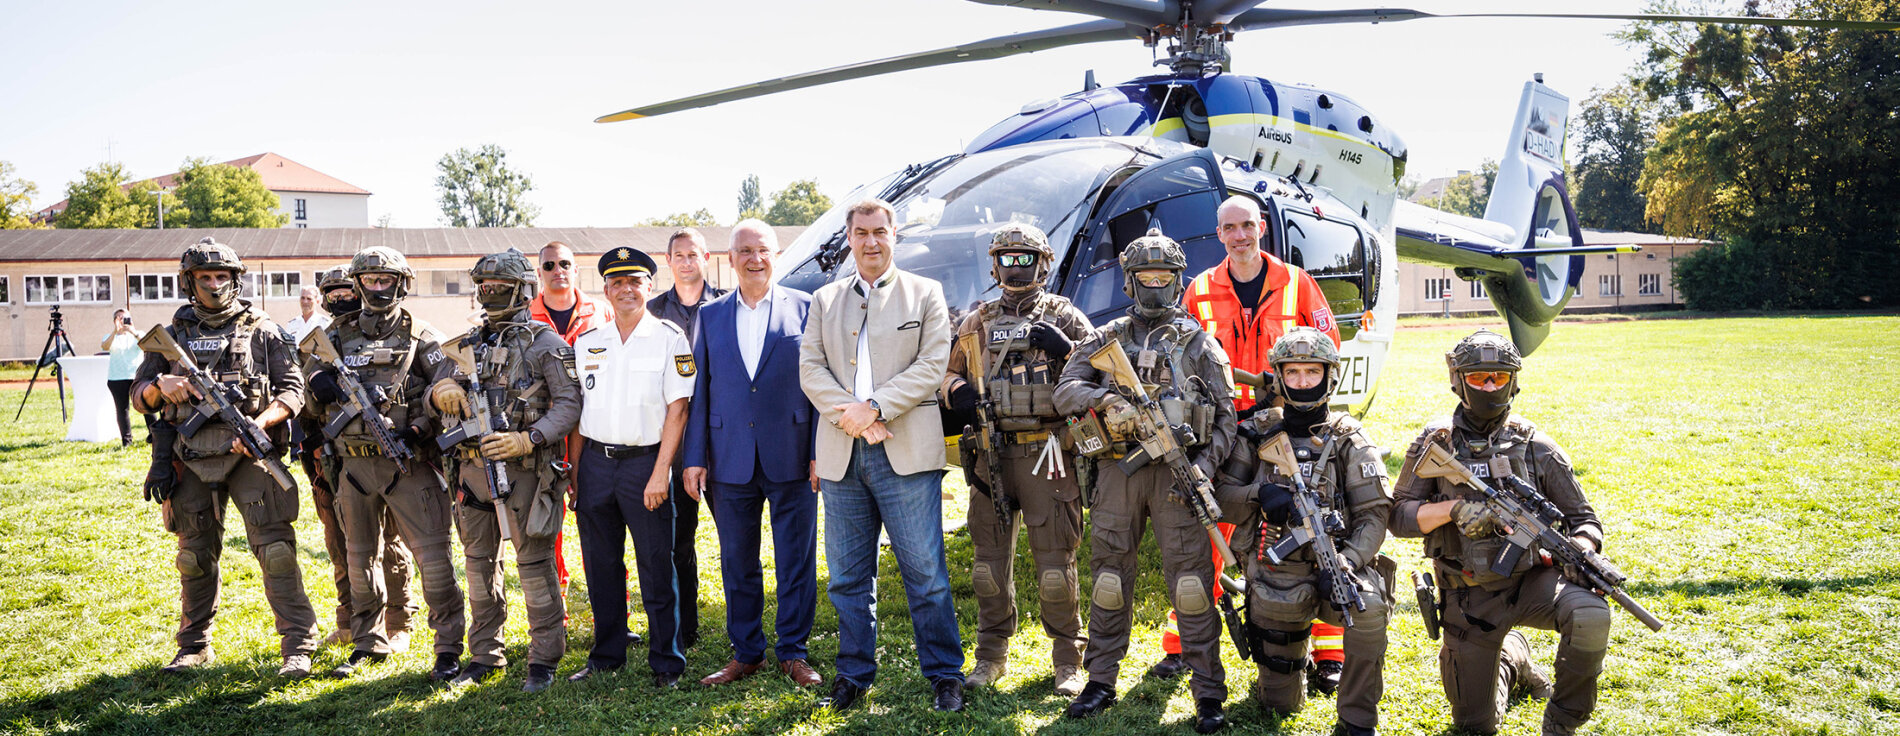 Gruppenfoto mit Söder, Herrmann und der Hubschrauberstaffel in Uniform vor Polizeihubschrauber